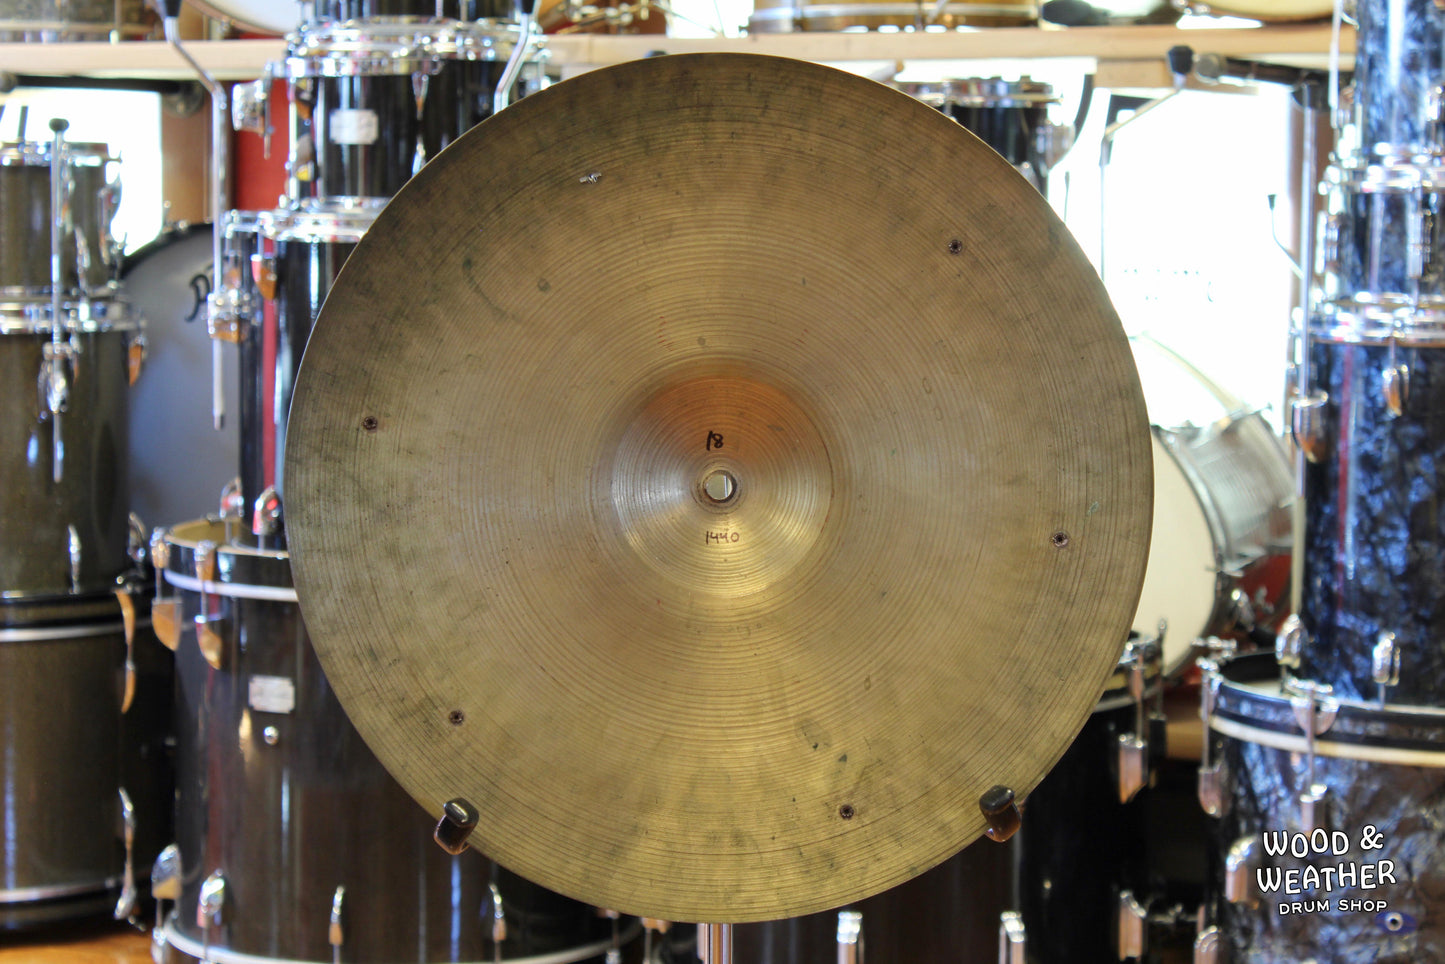 1960s A. Zildjian 18" Crash Cymbal w/ Rivets 1440g